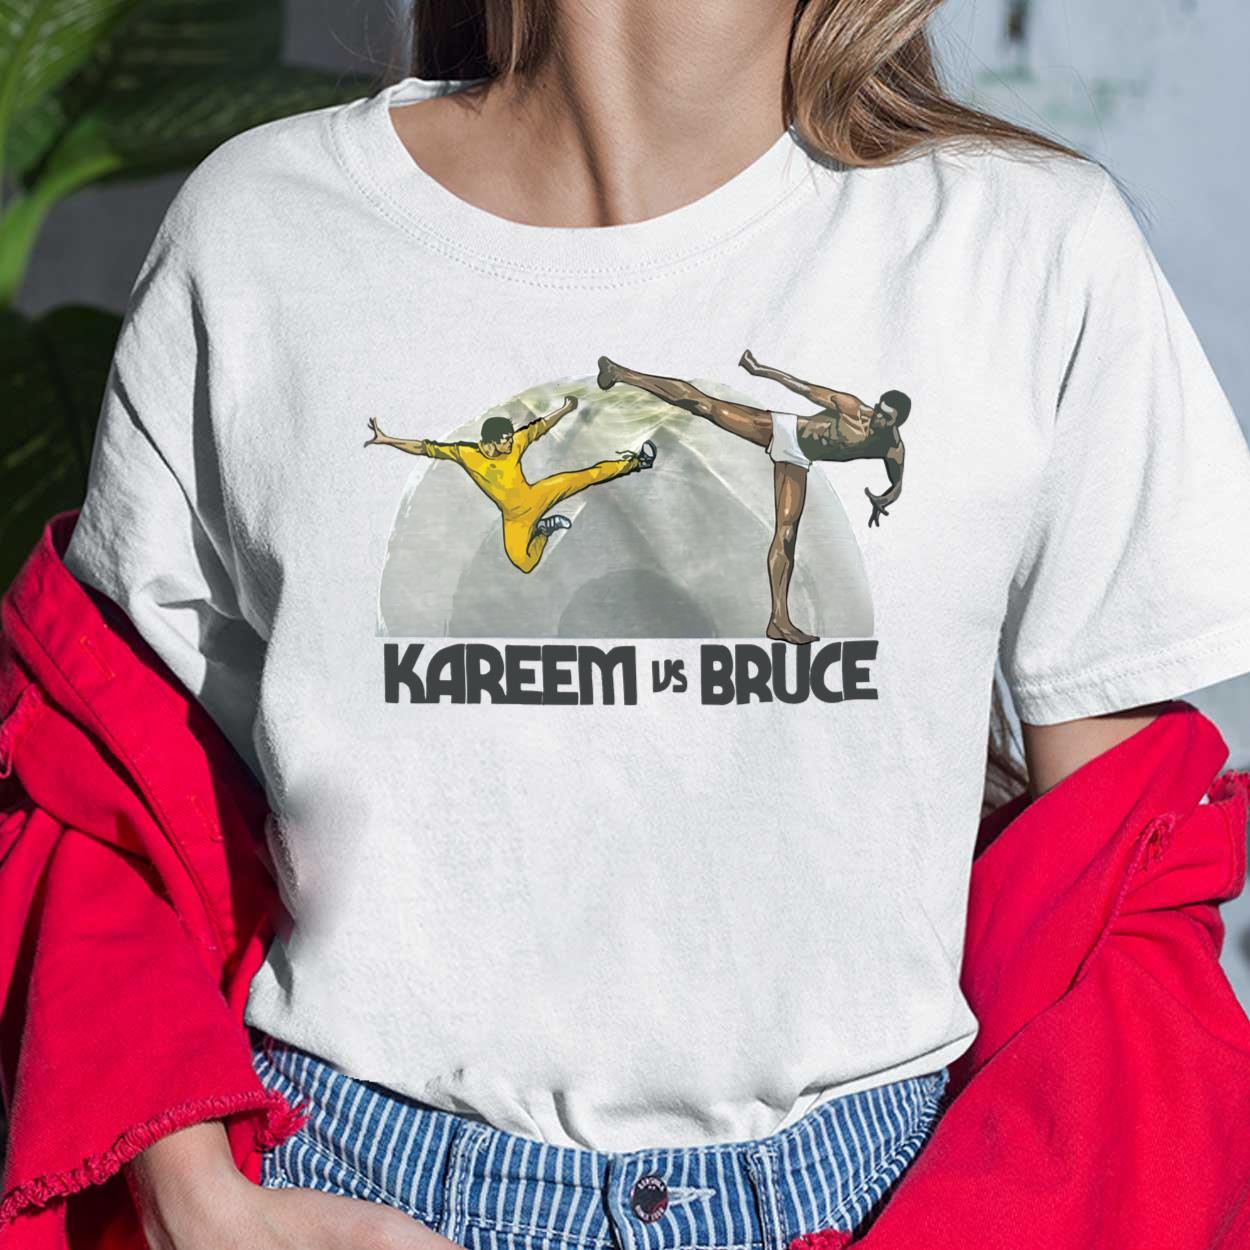 Kareem vs Bruce Lee Shirt, Kareem Shirt, Kareem Abdul Jabbar Shirt, Bruce  Lee Shirt, kareem vs bruce lee shirt,kareem vs bruce t shirt - Cherrycatshop